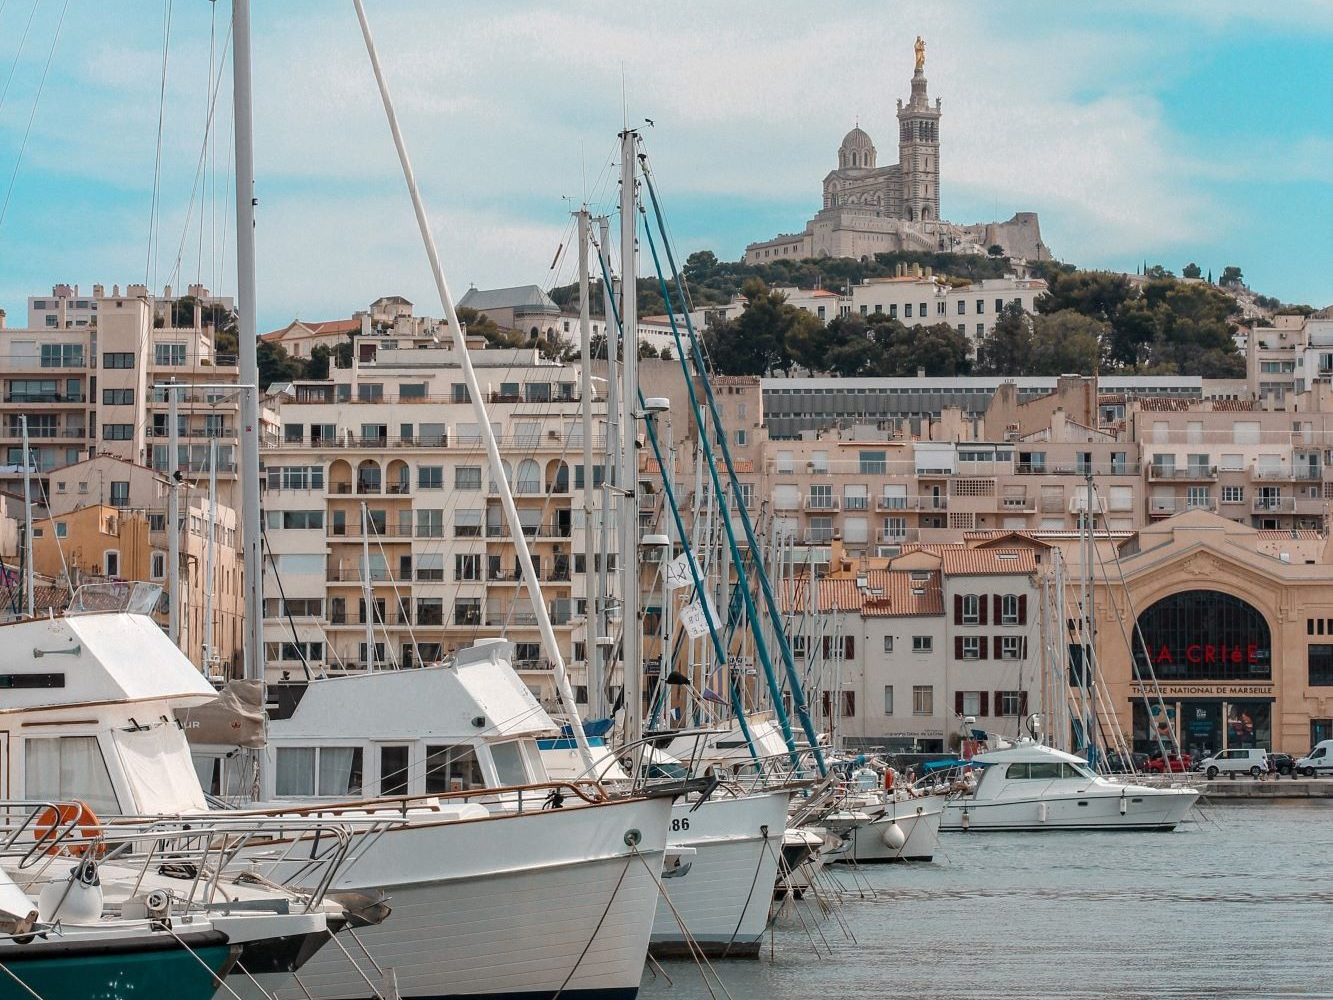 Hafen mit Schiffen, im Hintergrund sieht man die Gebäude der Stadt Marseille